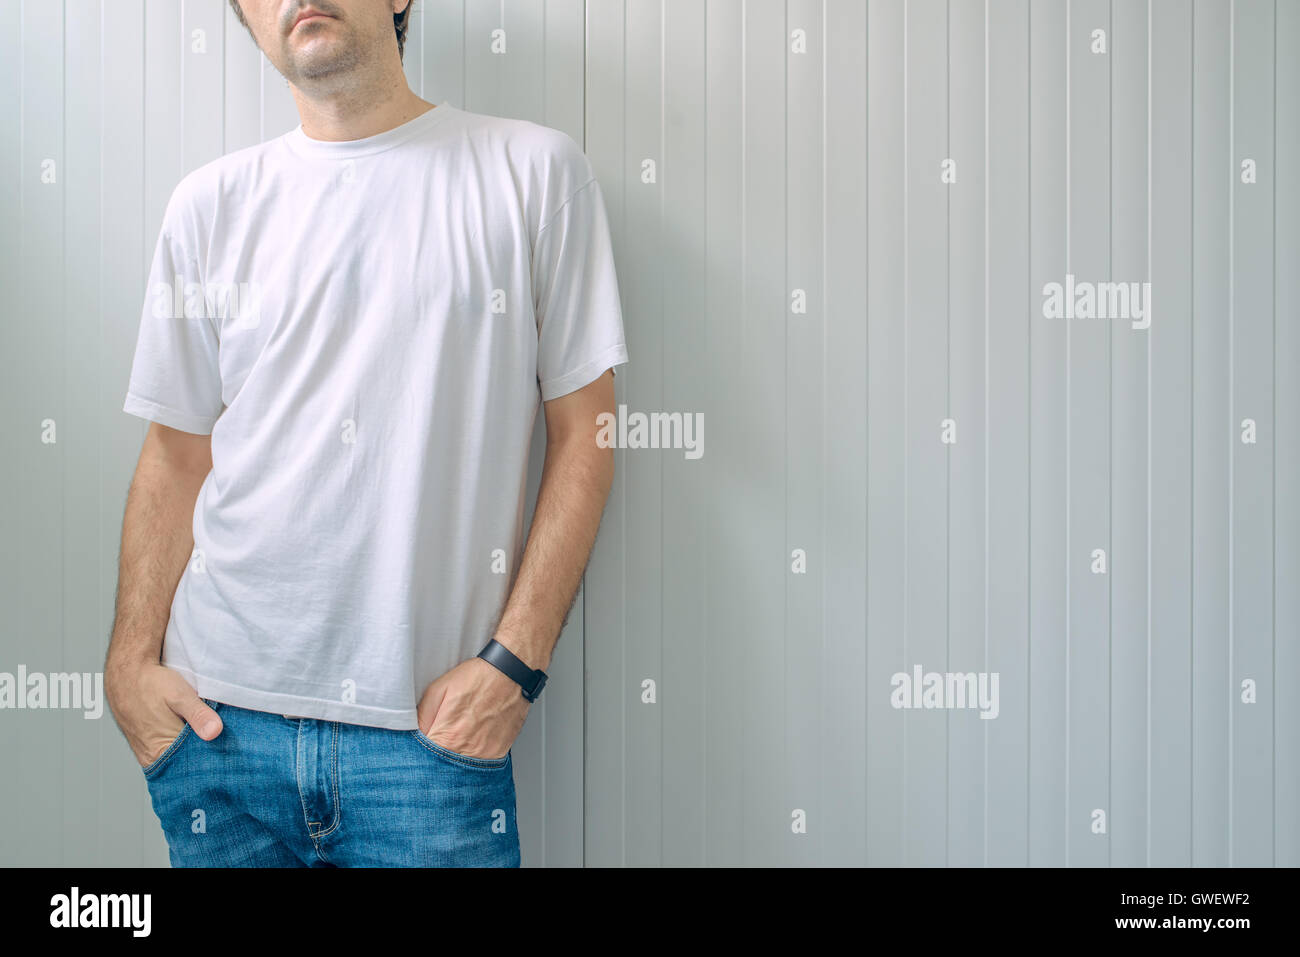 Legerer Mann in Jeans Hosen und weiße T-shirt als textfreiraum Shirt print Grafikdesign mock-up Stockfoto